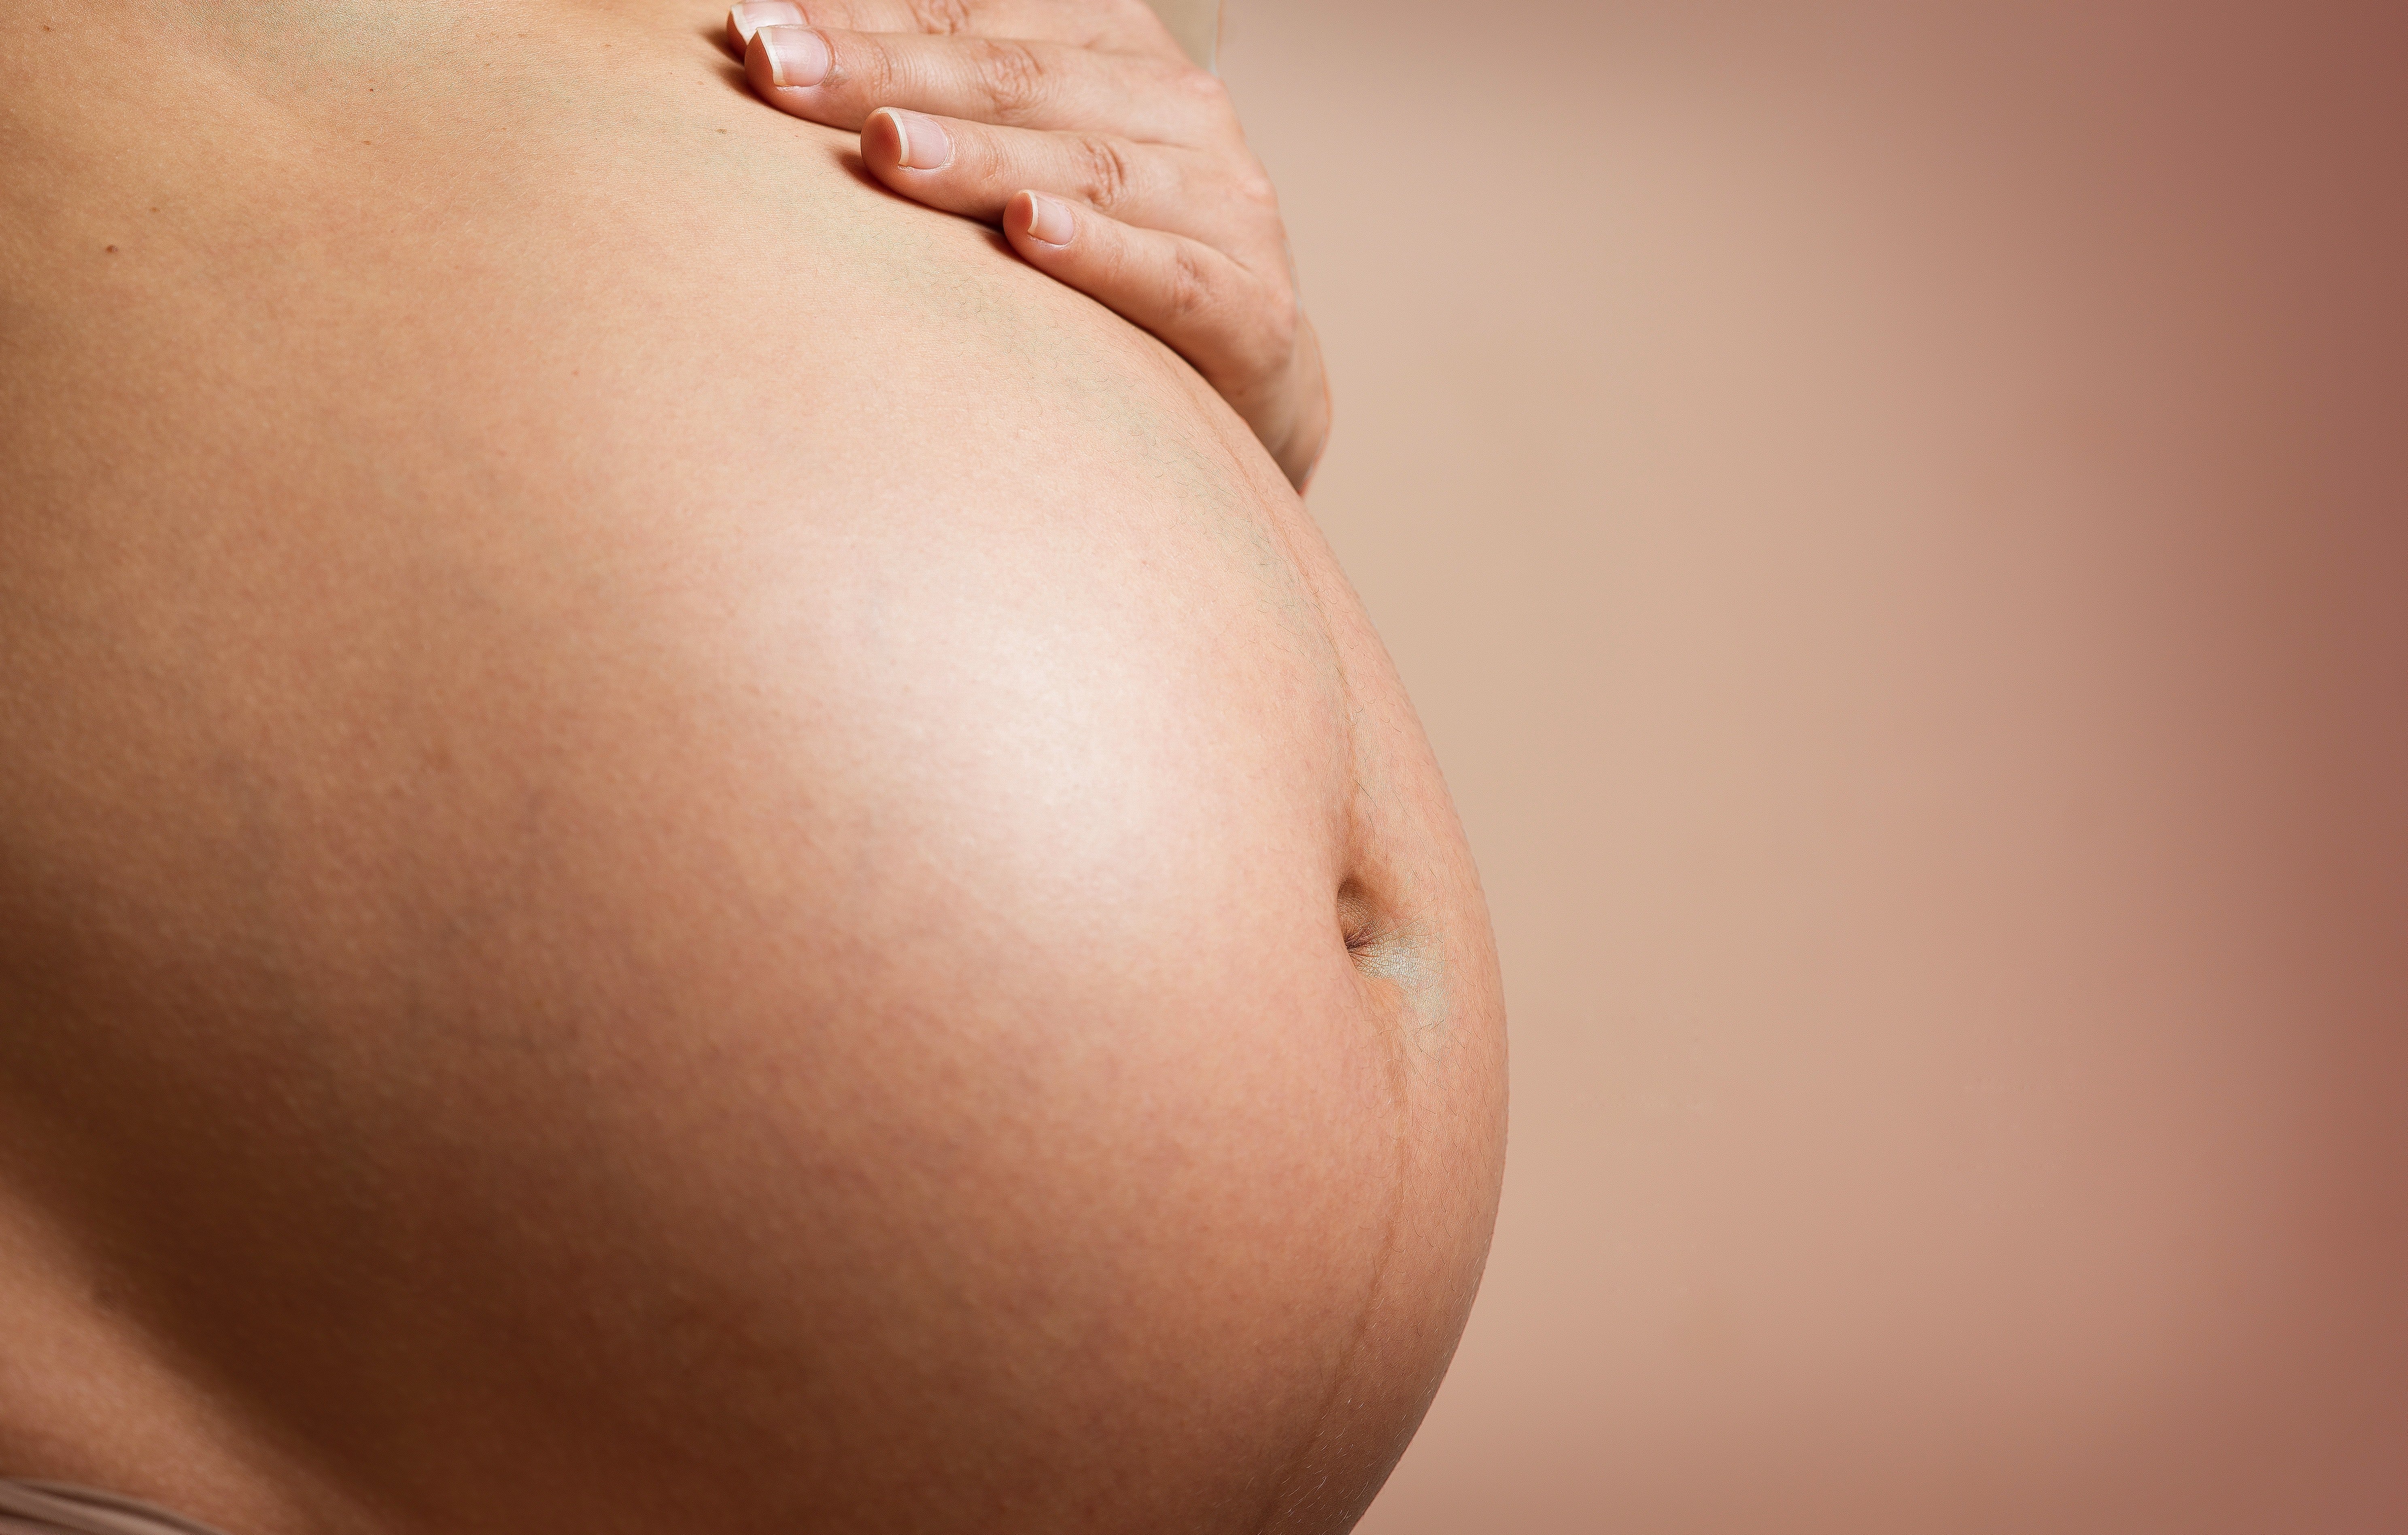 Σύνδρομο κάτω κοίλης φλέβας στην εγκυμοσύνη